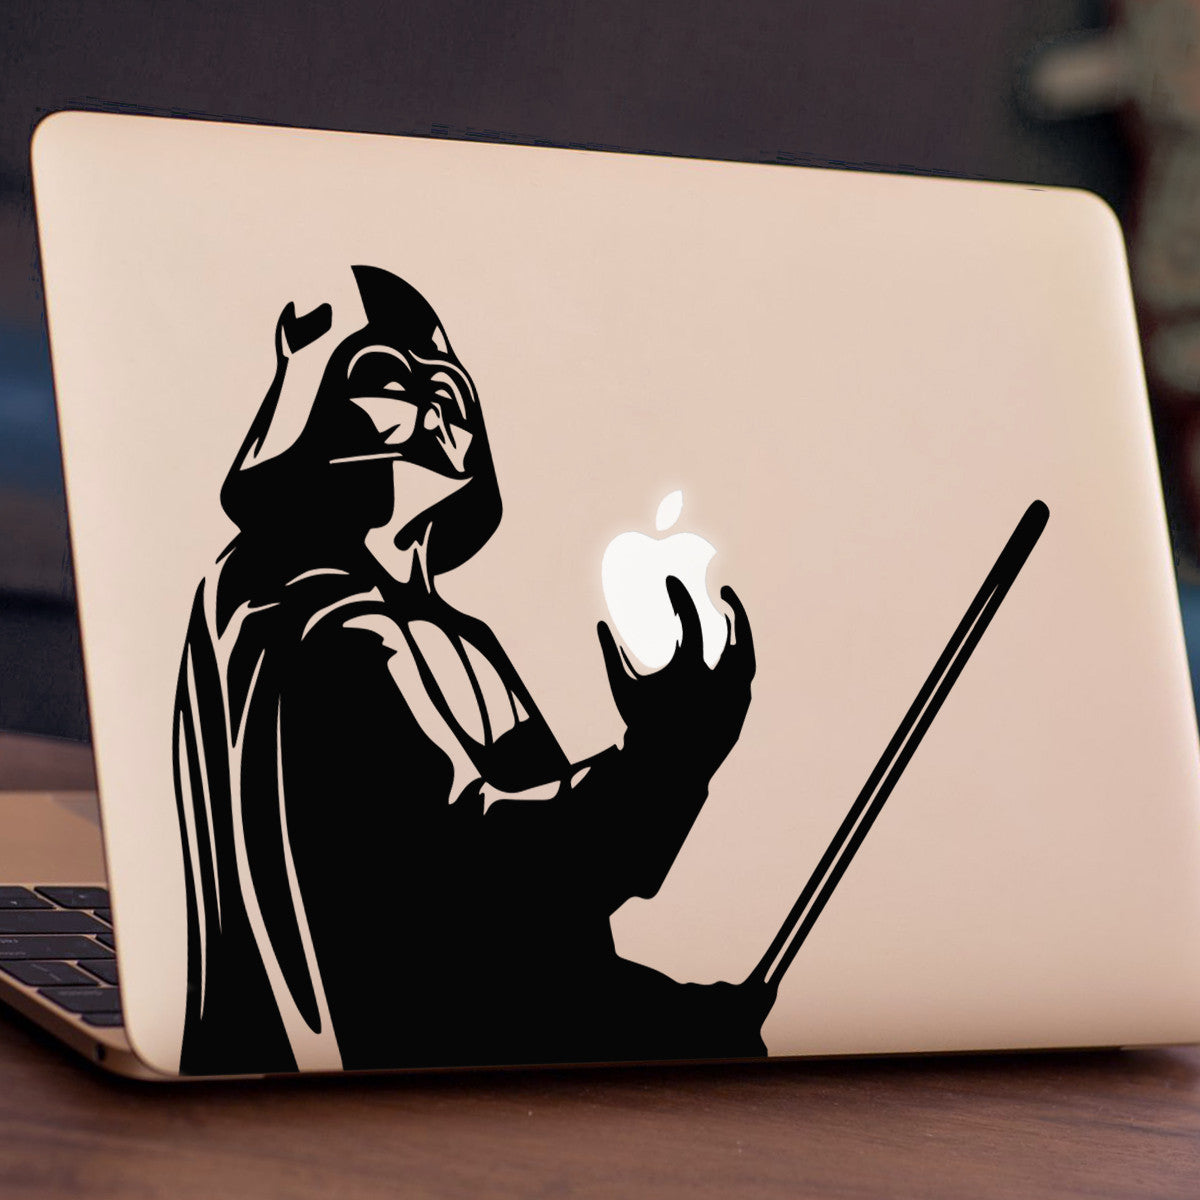 Darth Vader Macbook Decal